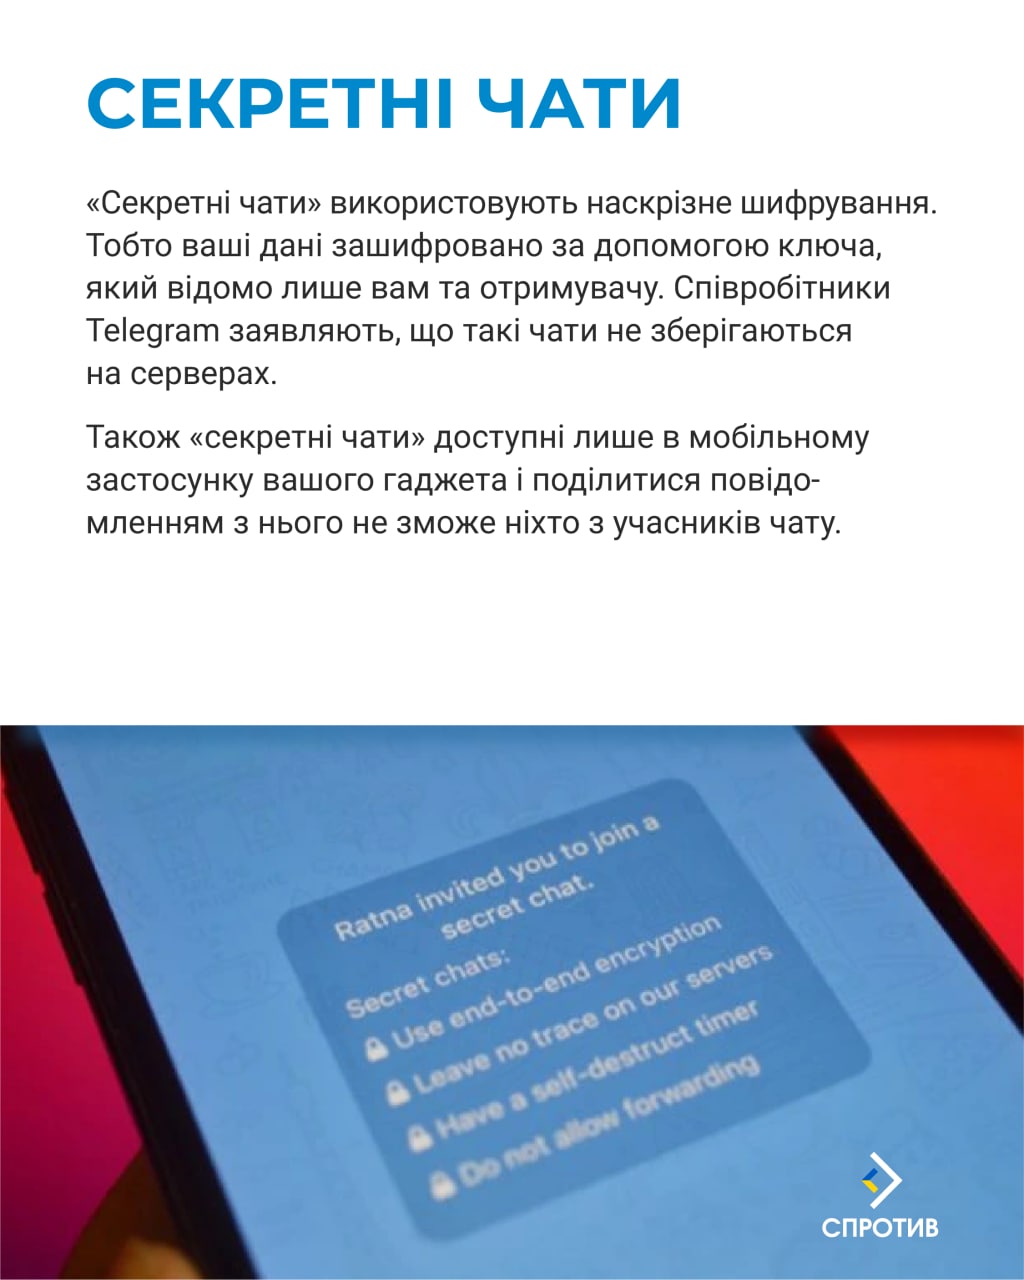 Труха телеграмм украина на русском языке смотреть фото 100